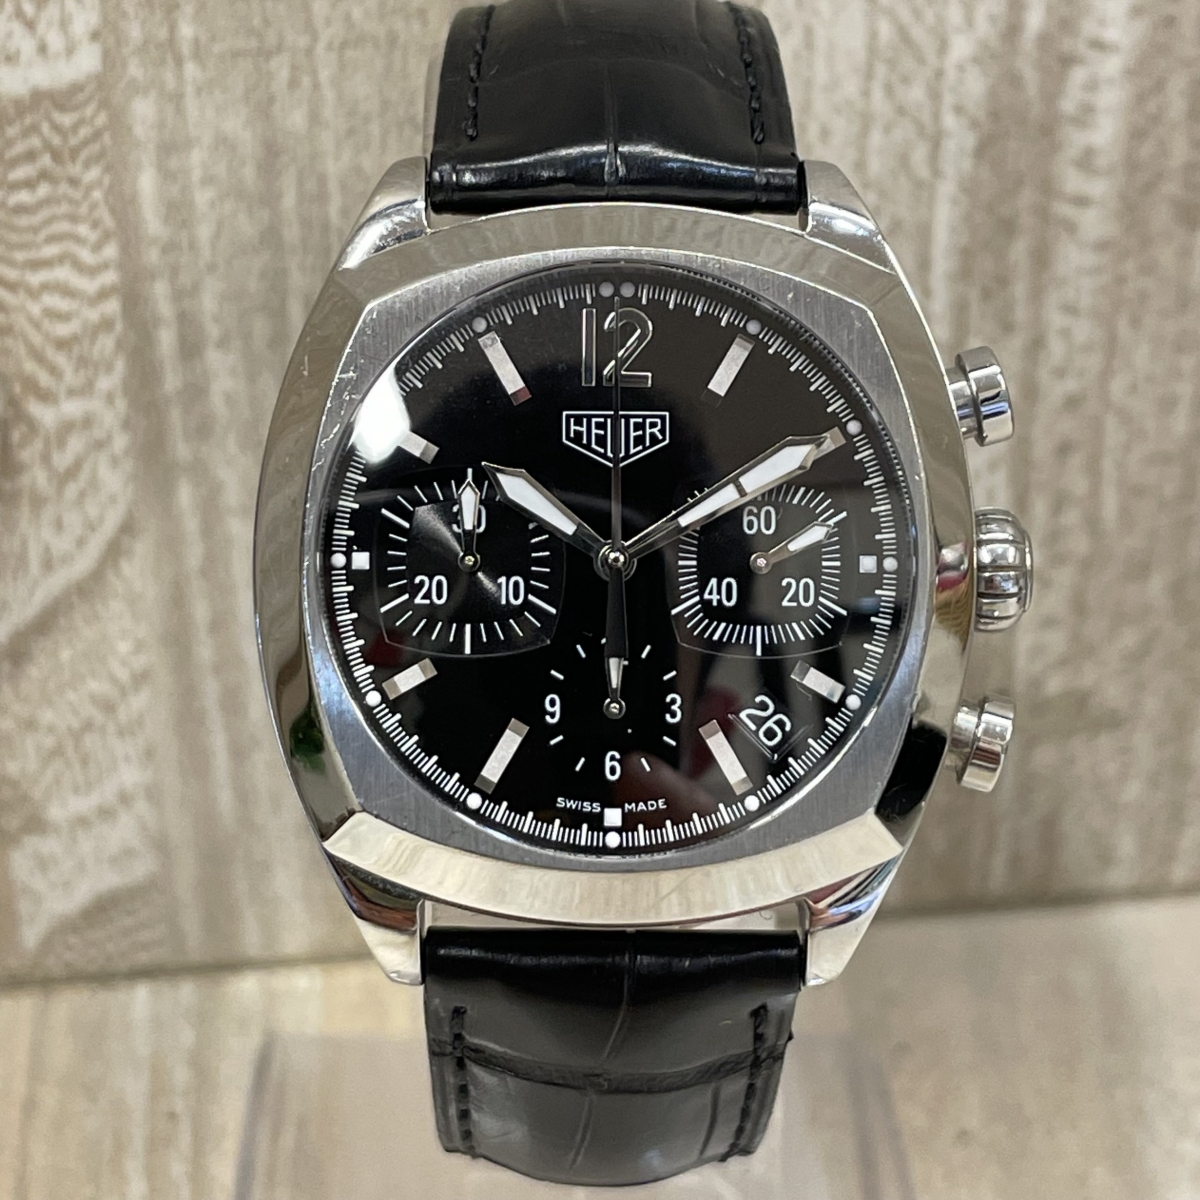 タグ・ホイヤーのSS CR2110 モンツァ クロノグラフ 自動巻き時計 レザーベルトの買取実績です。